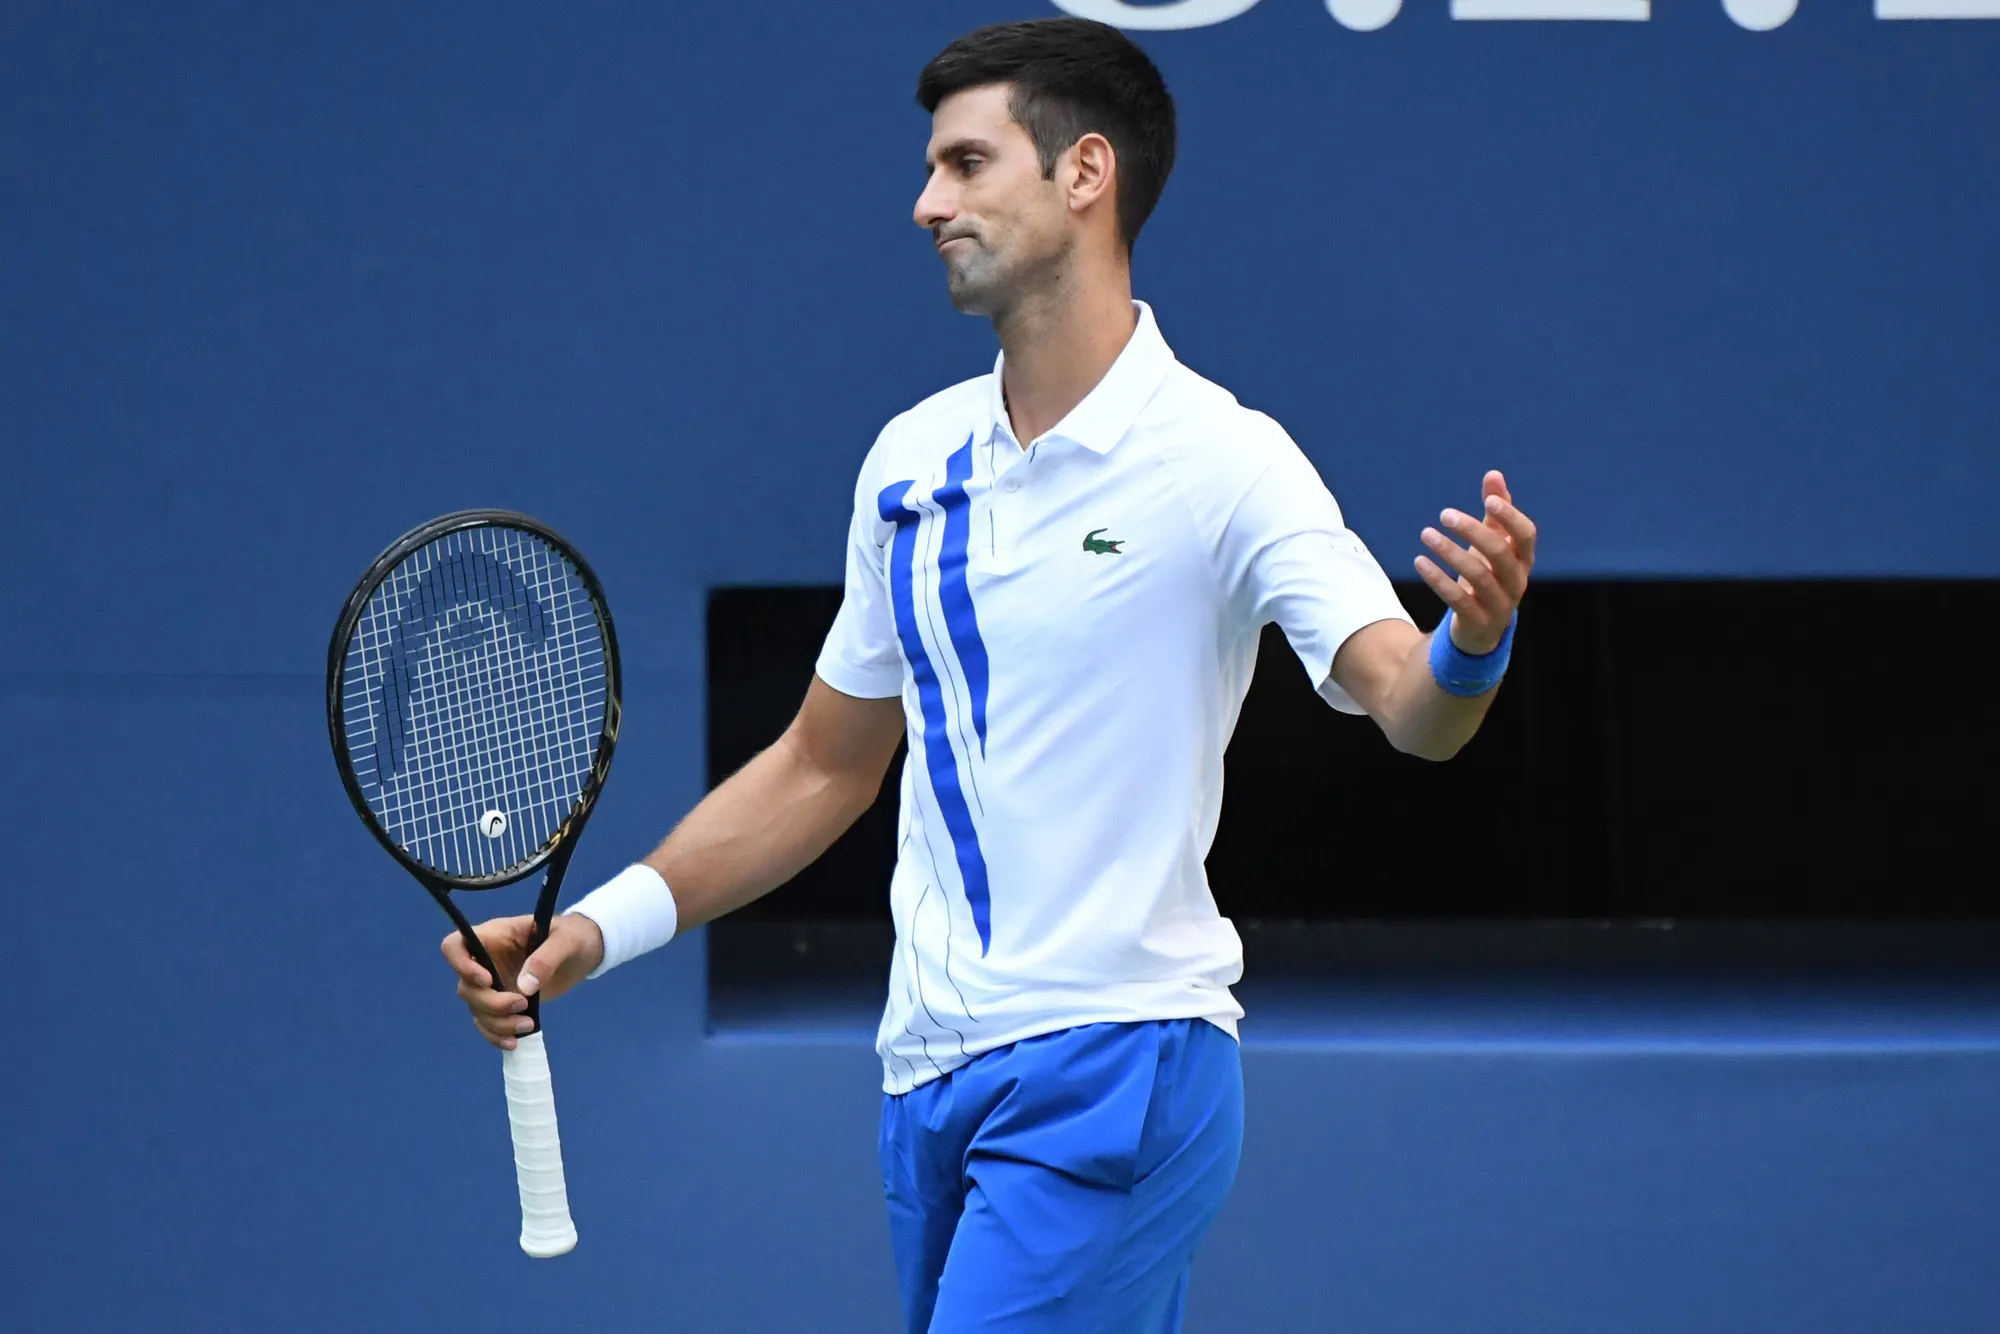 Djokovic không chắc dự Australian Open 2022 - Federer văng khỏi top 10 ATP sau 968 tuần